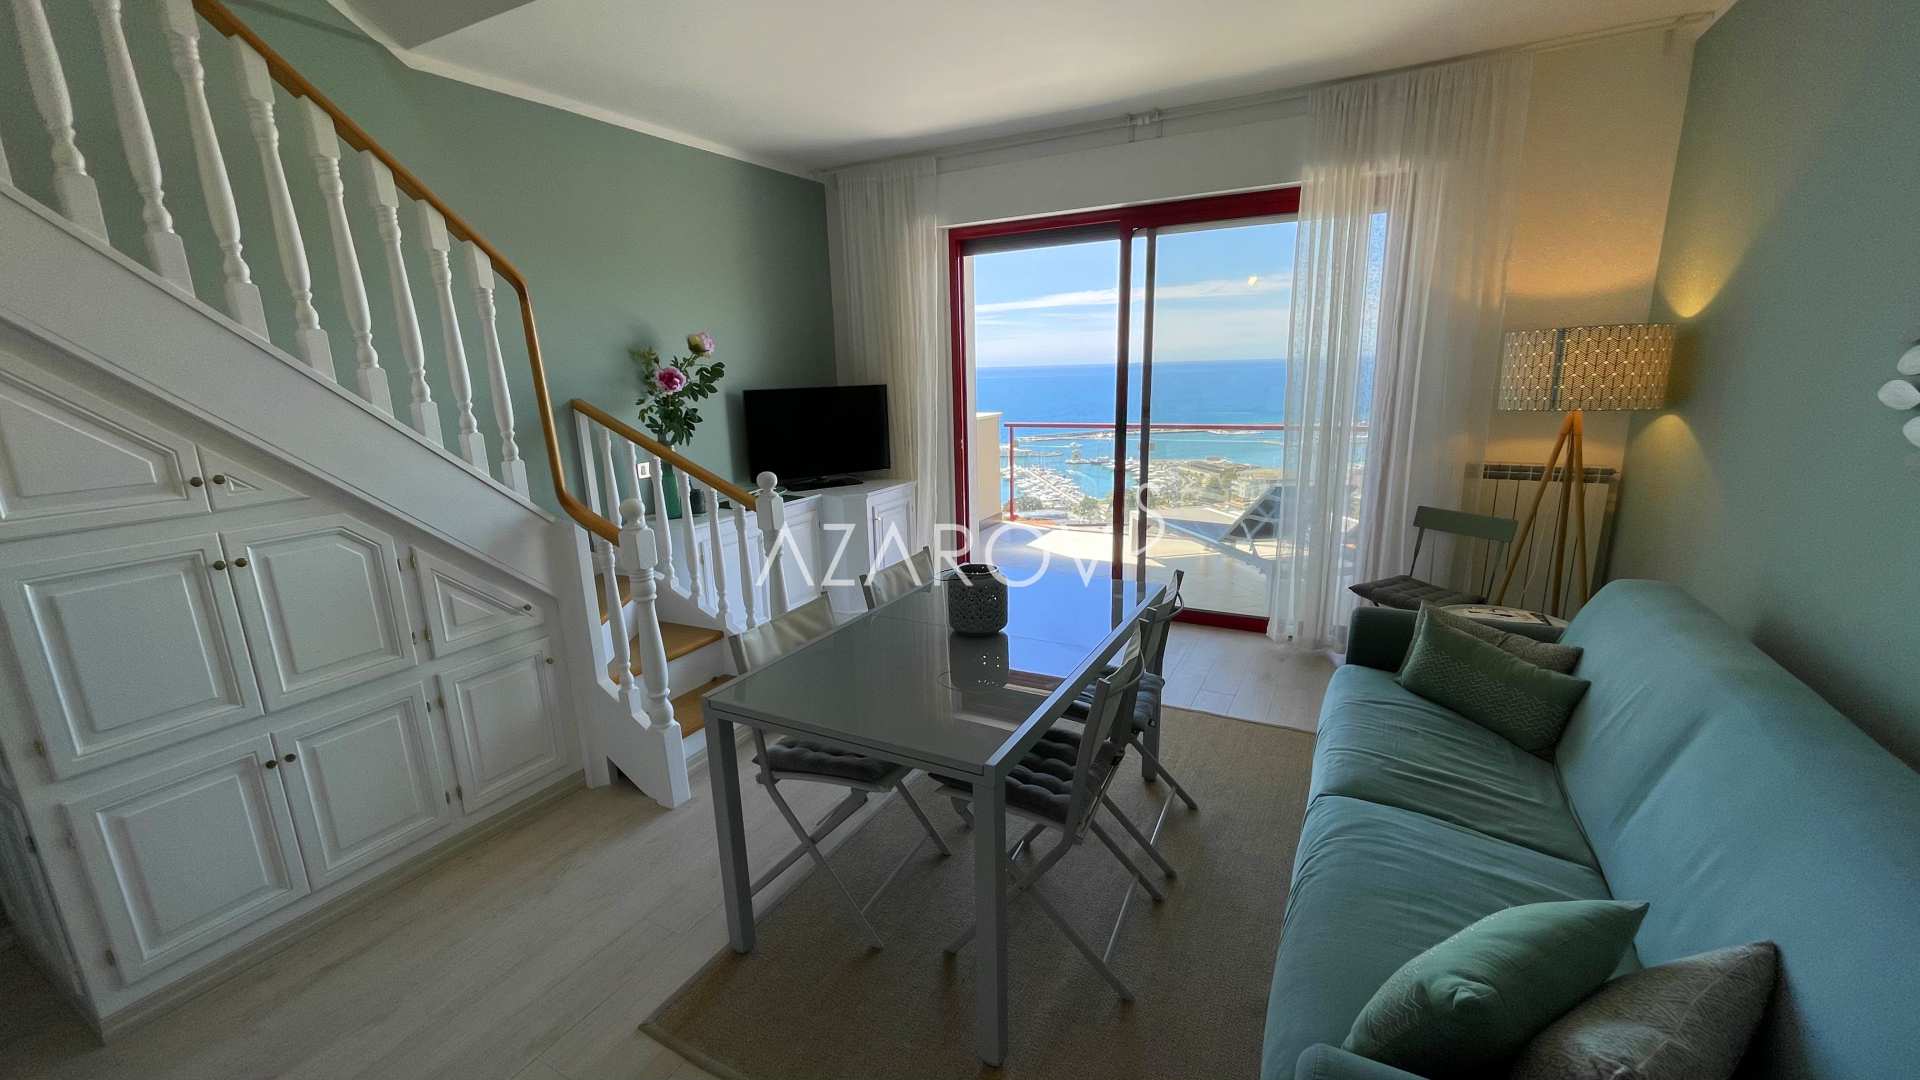 To-værelses lejlighed i Sanremo ved havet